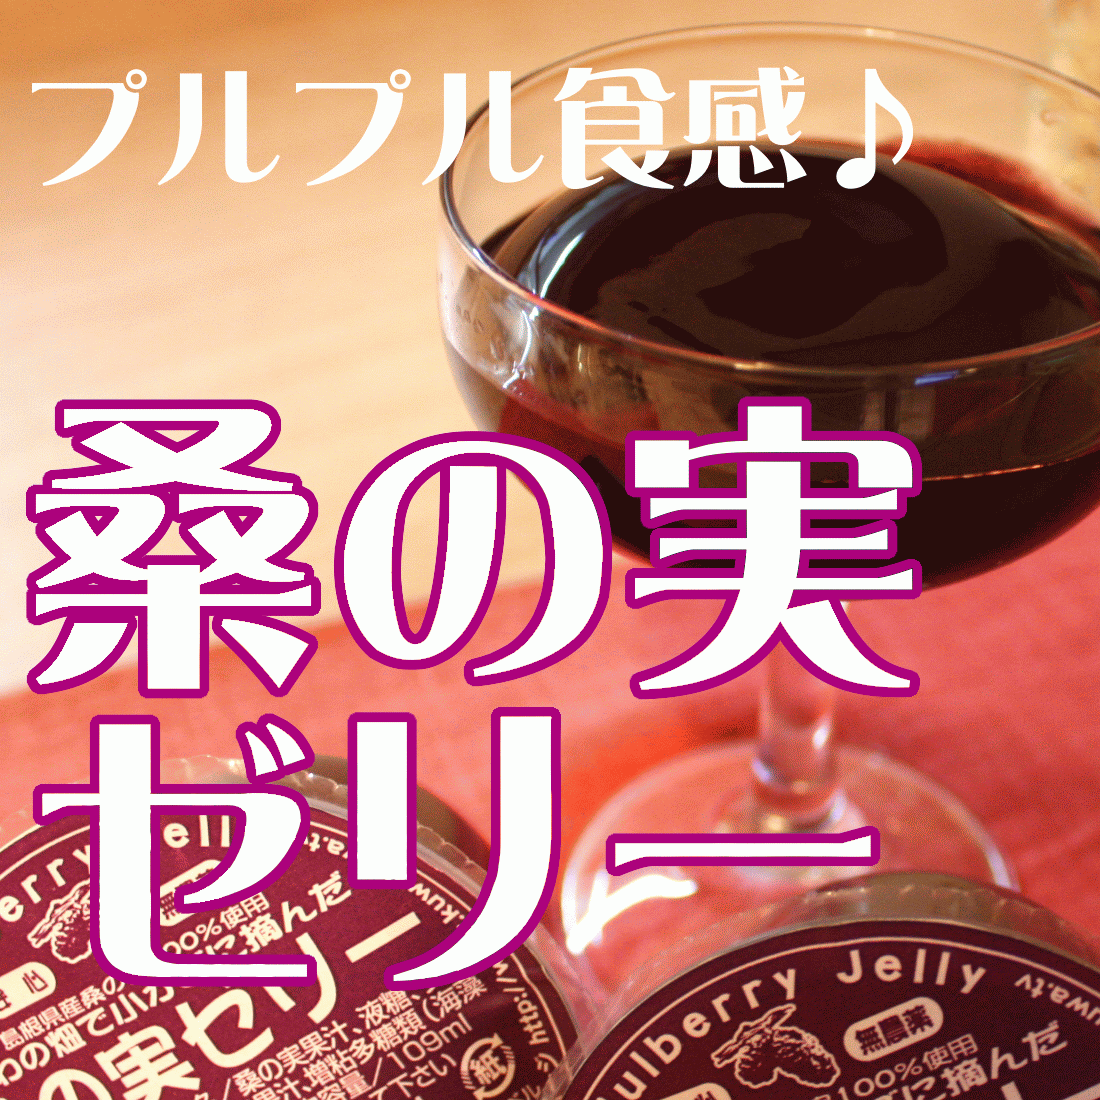 桑の実ゼリー 109ml有限会社桜江町桑茶生産組合 Mulberry fruit jelly